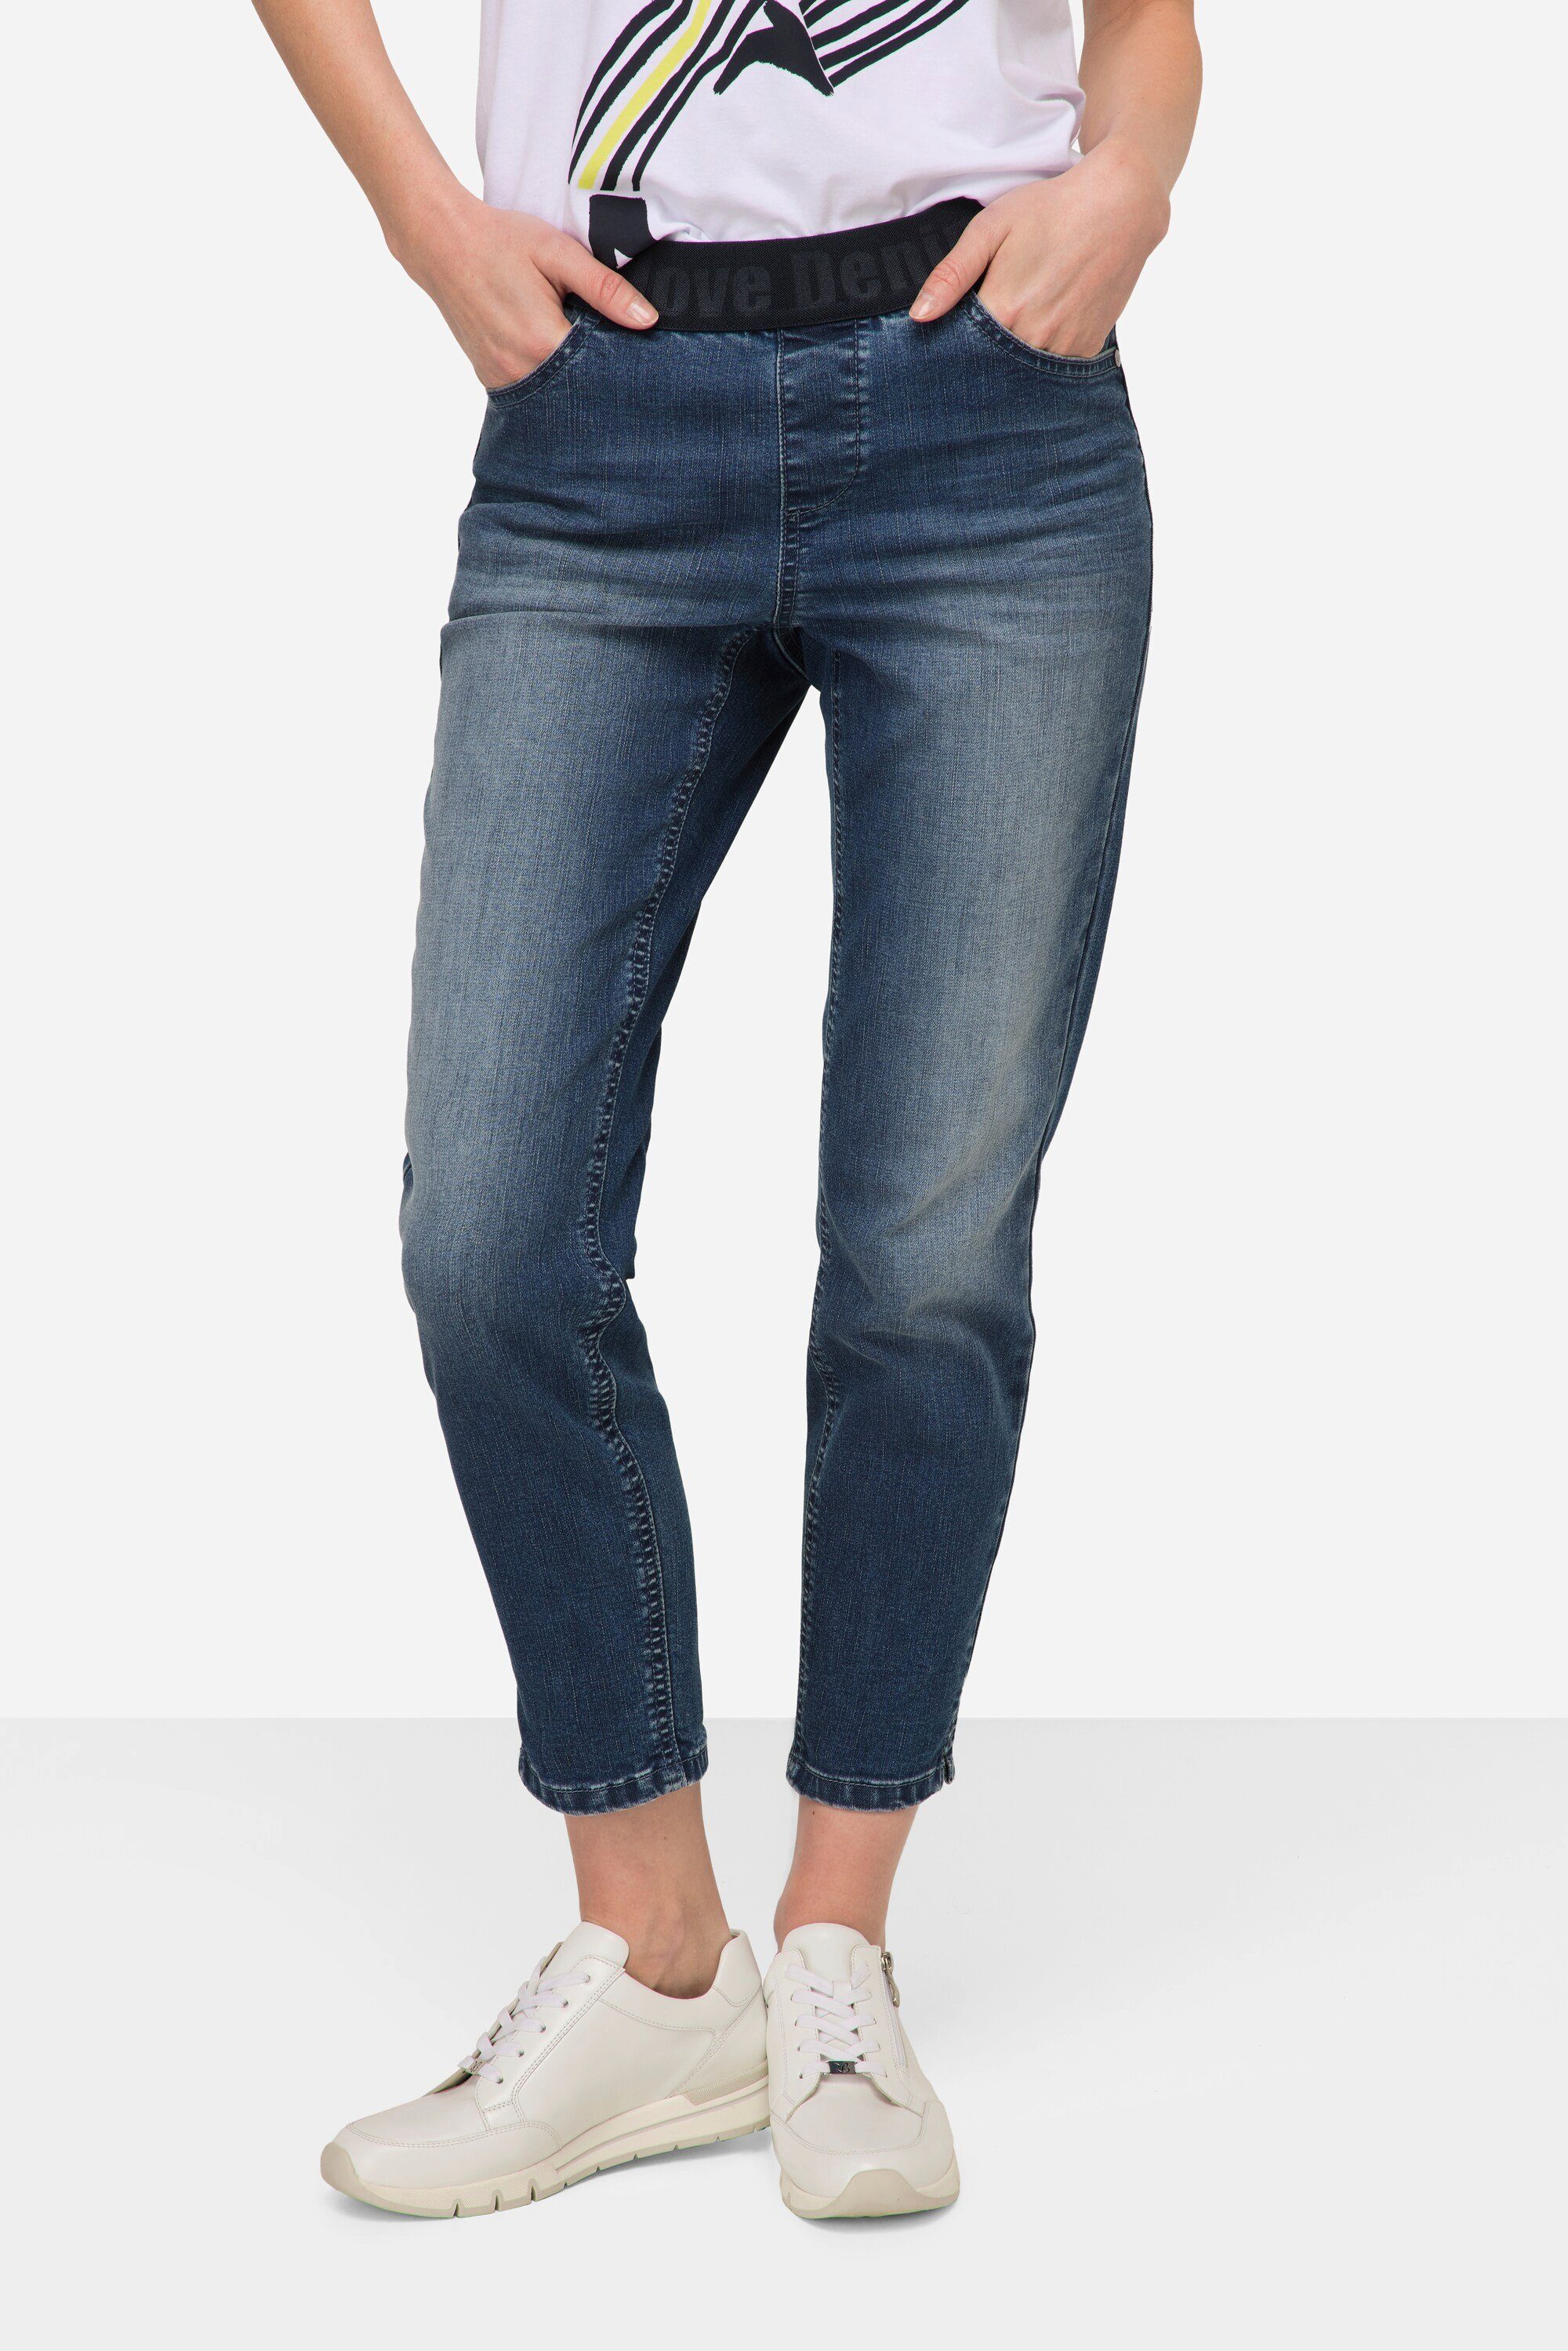 Laurasøn Regular-fit-Jeans Jeans Julia Elastikbund 4 Pocket blue denim